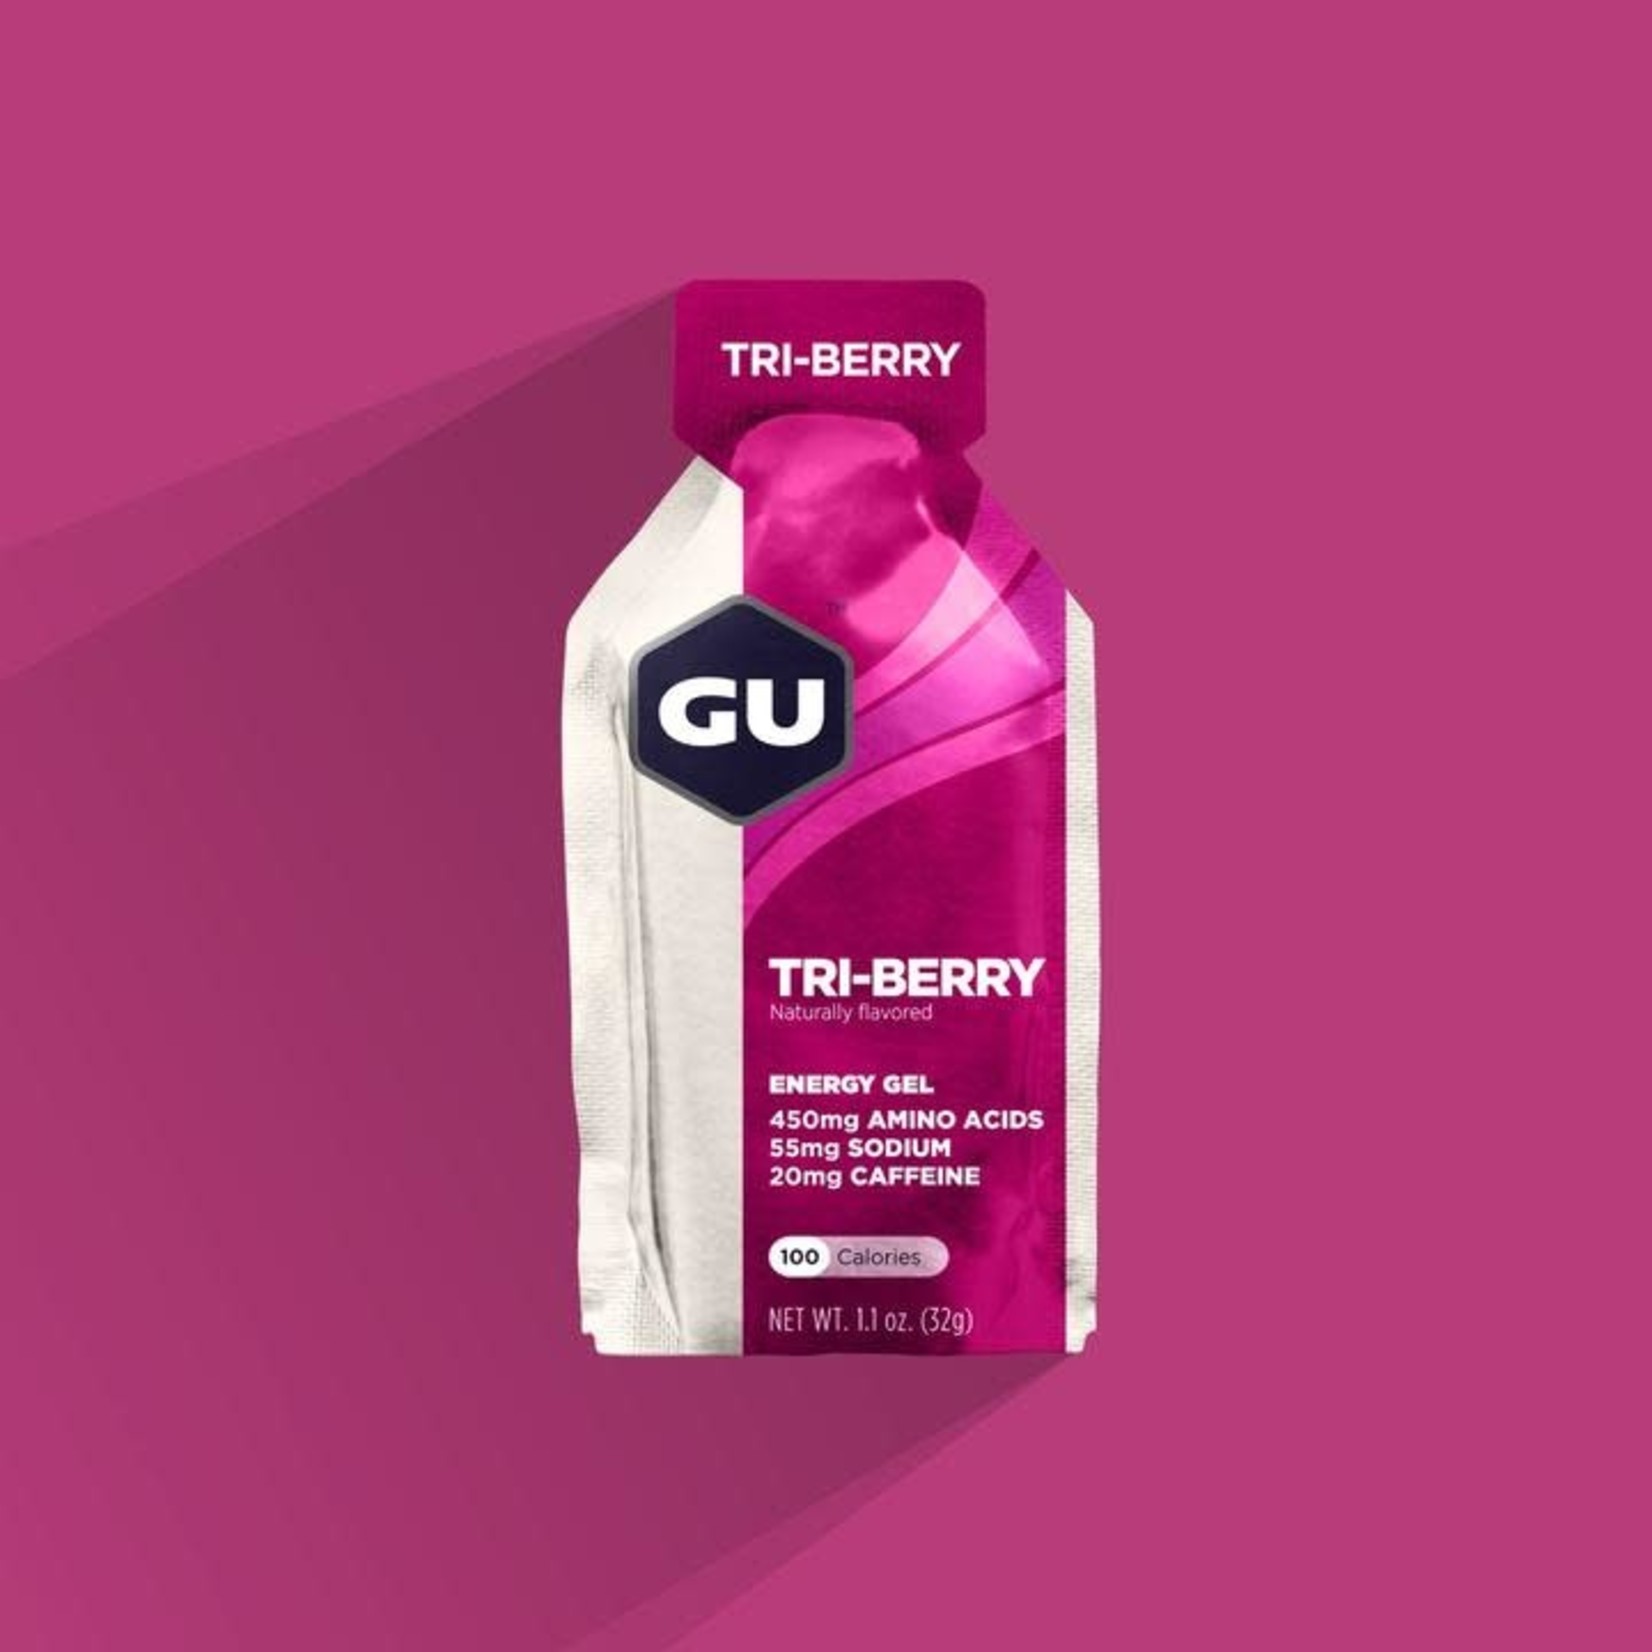 GU Original Sports Nutrition Energy Gel - Various Flavors